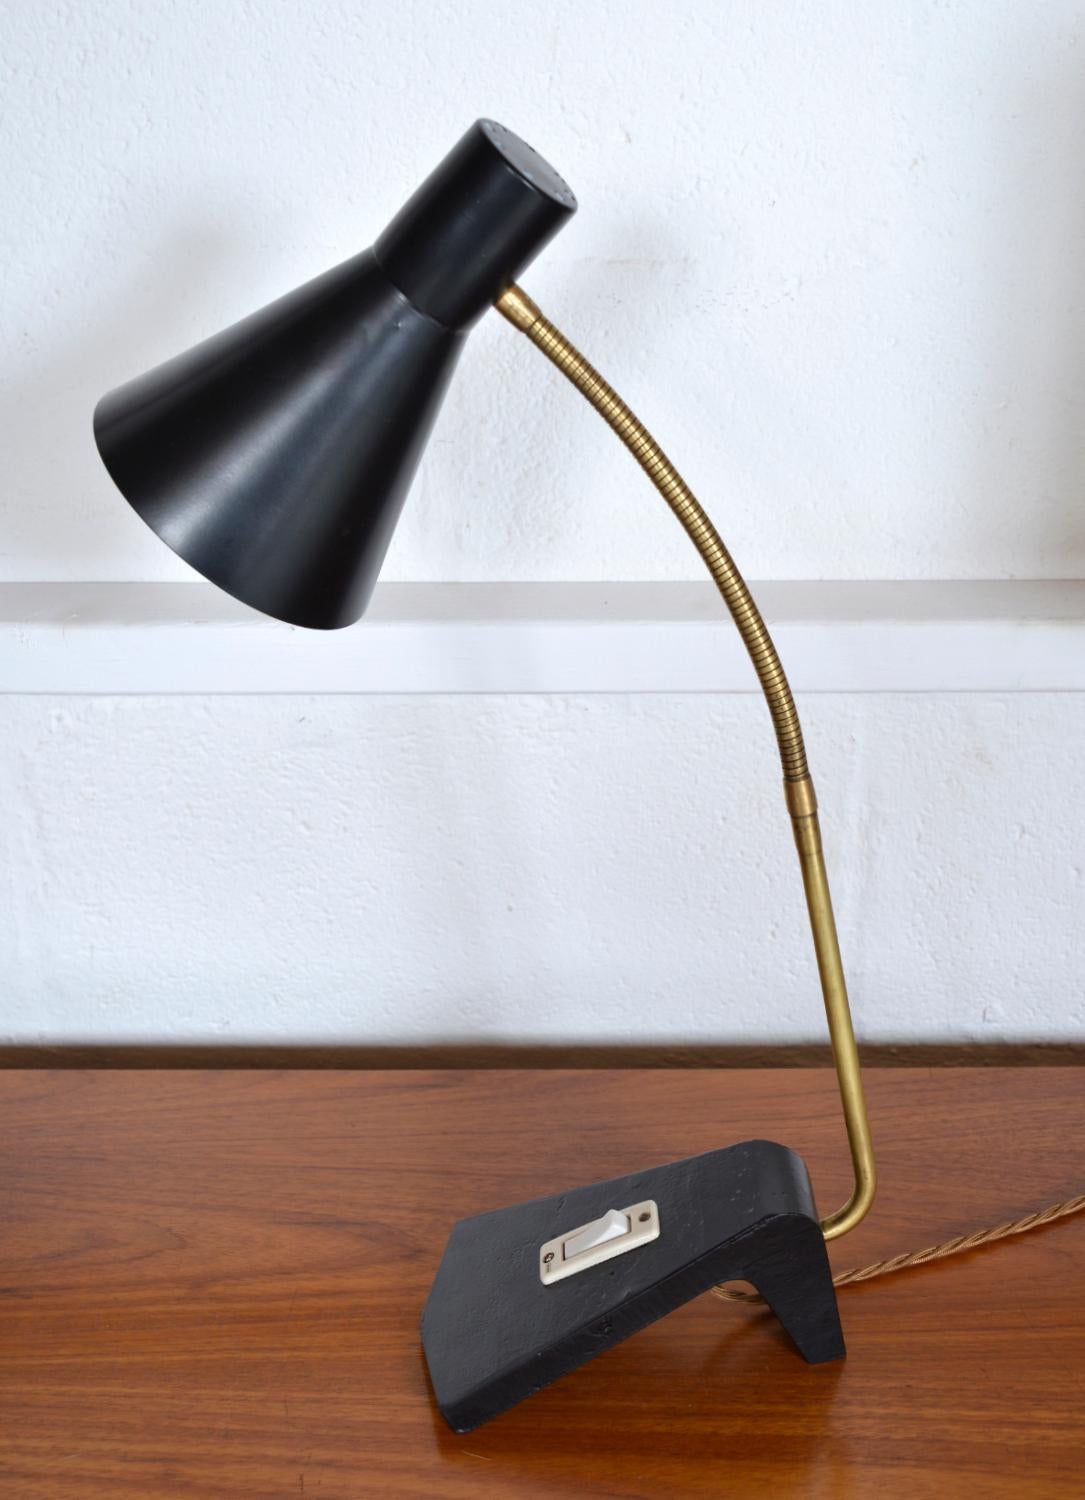 Lampe de bureau suédoise à col de cygne très soignée du milieu du siècle, avec un abat-jour en aluminium noir, un col de cygne en laiton et une lourde base en acier moulé de forme inhabituelle avec interrupteur. La lampe tient bien dans diverses